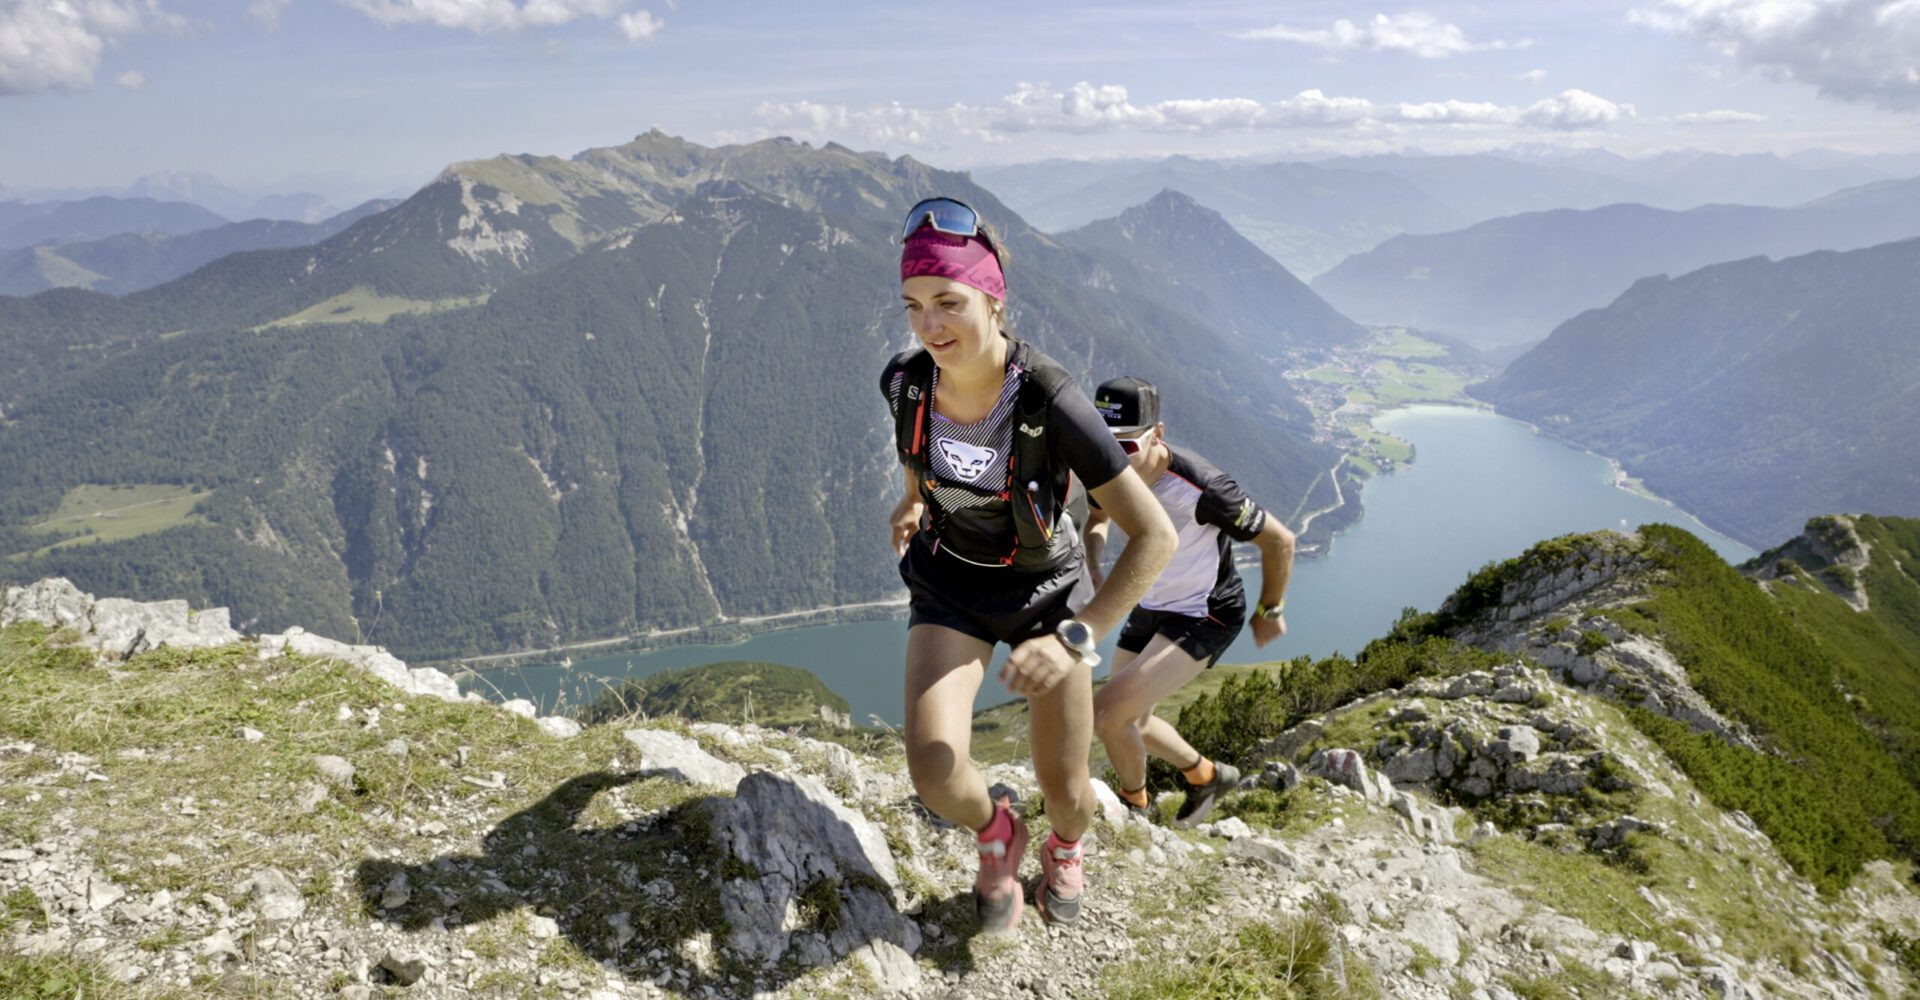 Bergwelten Achensee Trailrunner Theresa Lamprecht und Marco Hollaus (c) Nikolas Winter - jpg